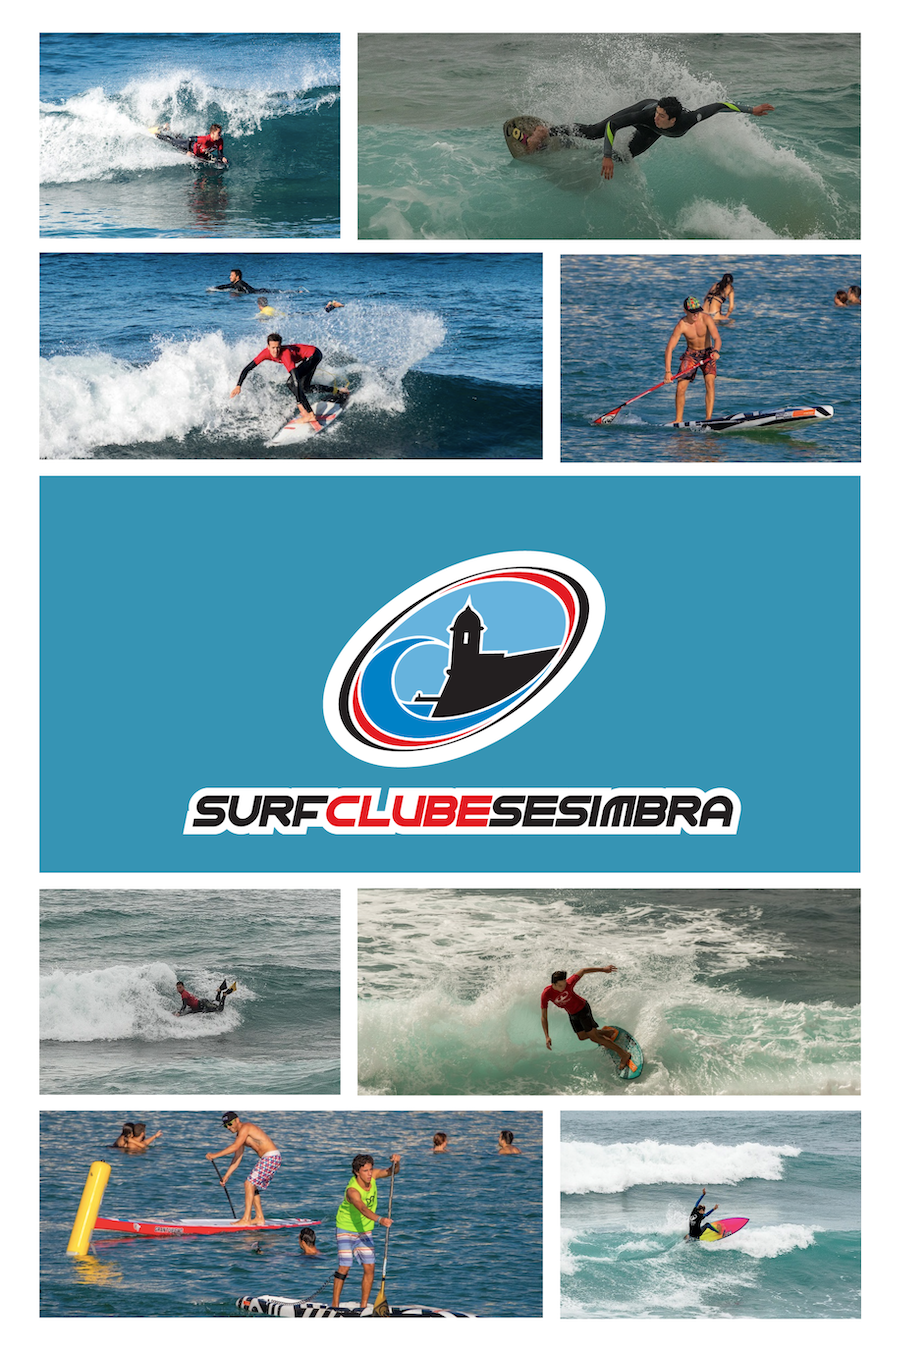 Surf Clube de Sesimbra Oferece Inscrições Gratuitas para os Circuitos Inter-Sócios, Regionais e Nacionais